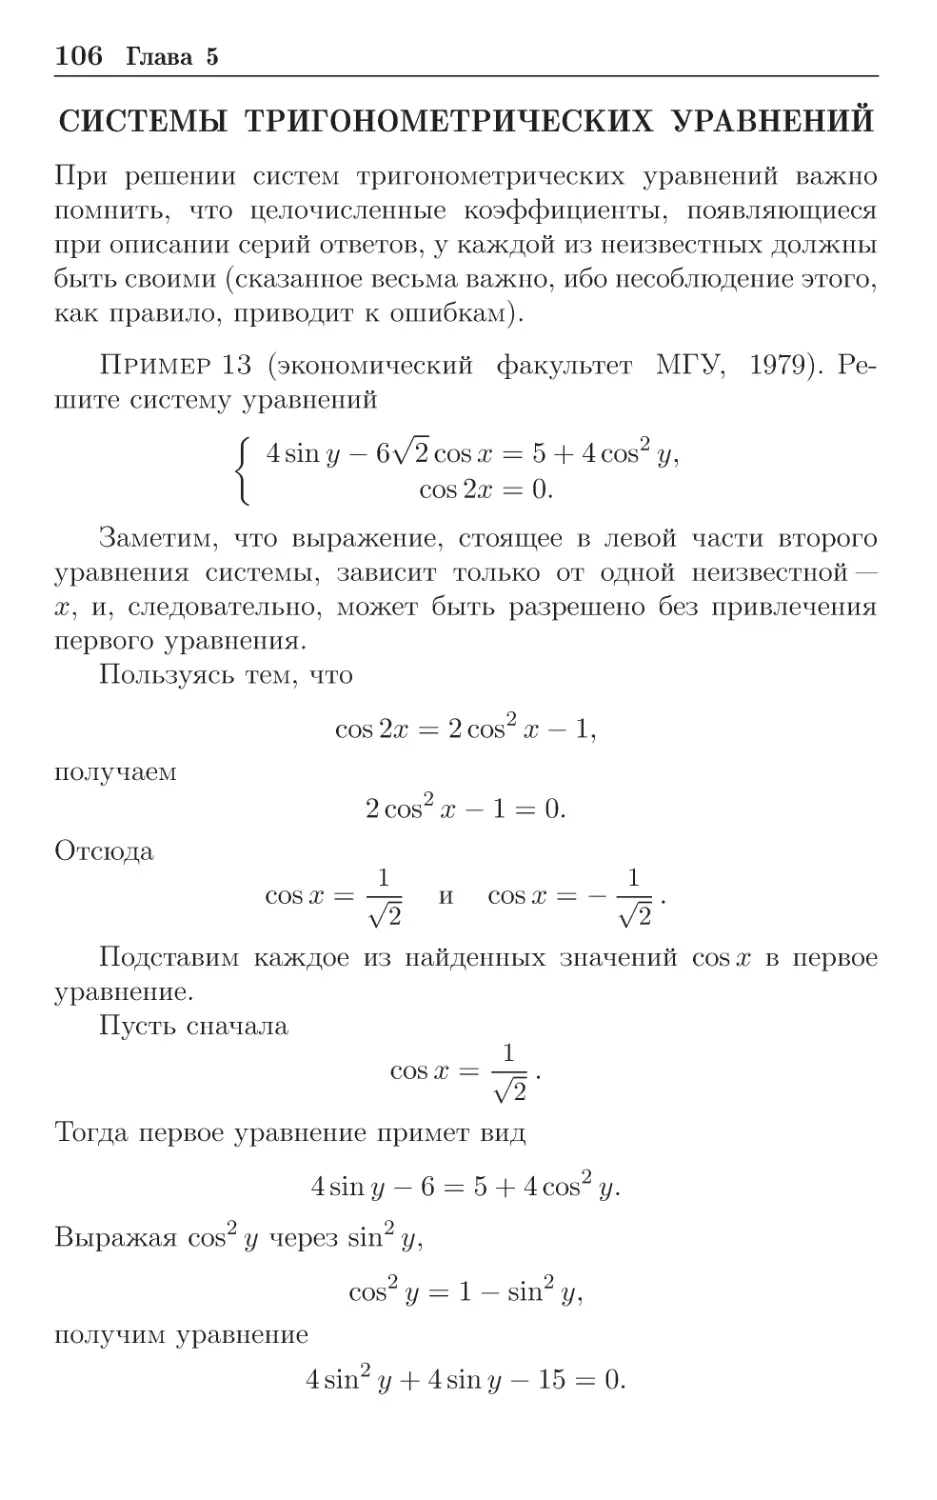 Системы тригонометрических уравнений